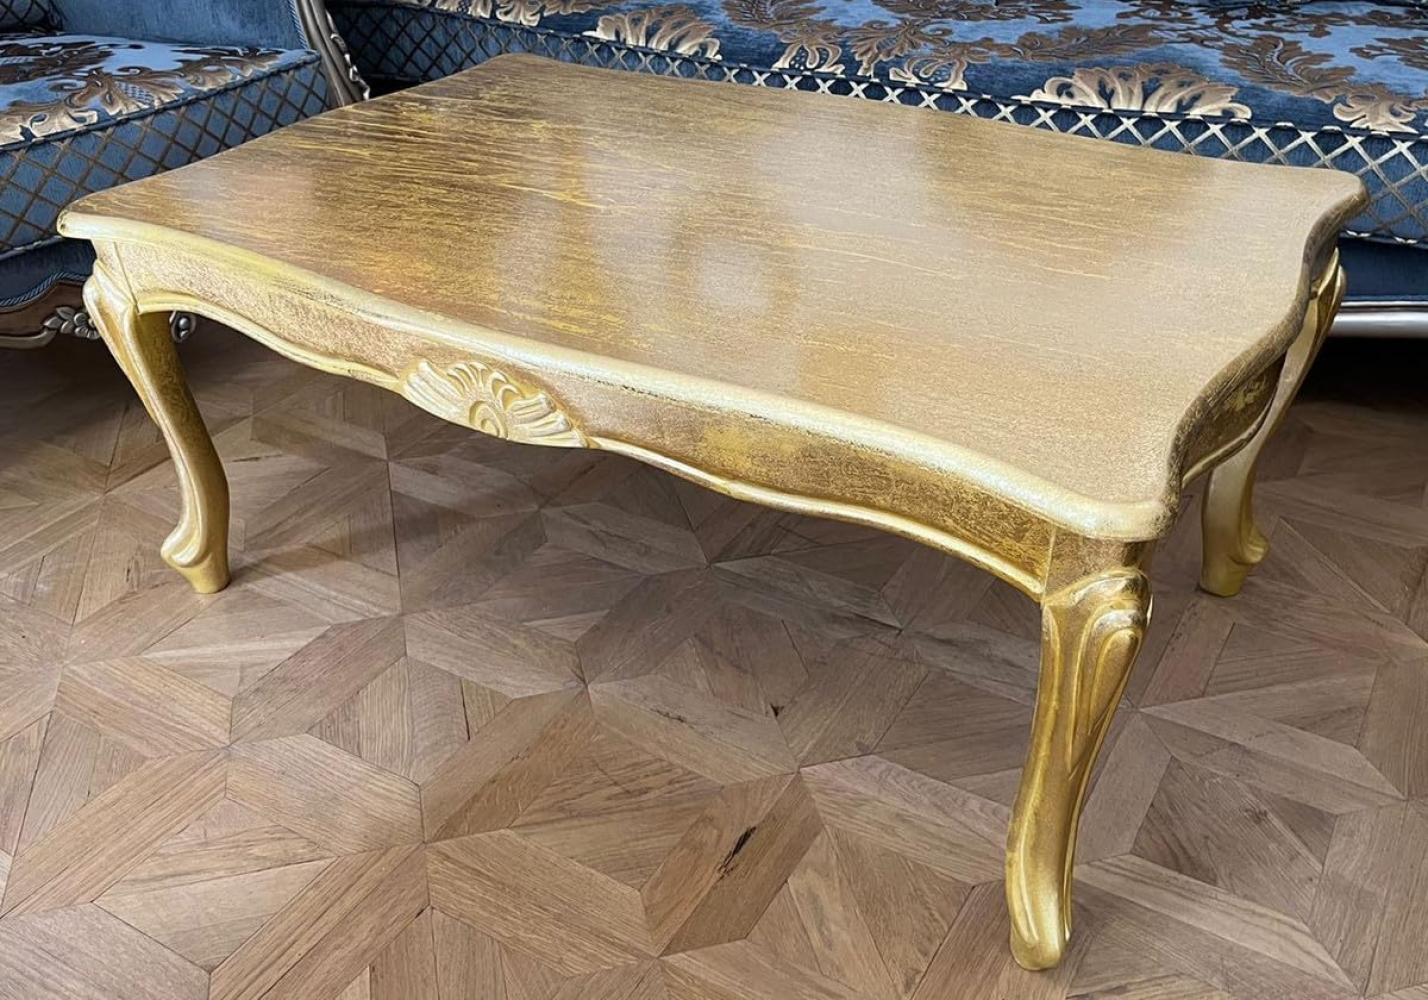 Casa Padrino Luxus Barock Couchtisch Antik Gold - Massivholz Wohnzimmertisch im Barockstil - Barock Möbel - Luxus Möbel im Barockstil - Barock Einrichtung - Edel & Prunkvoll Bild 1